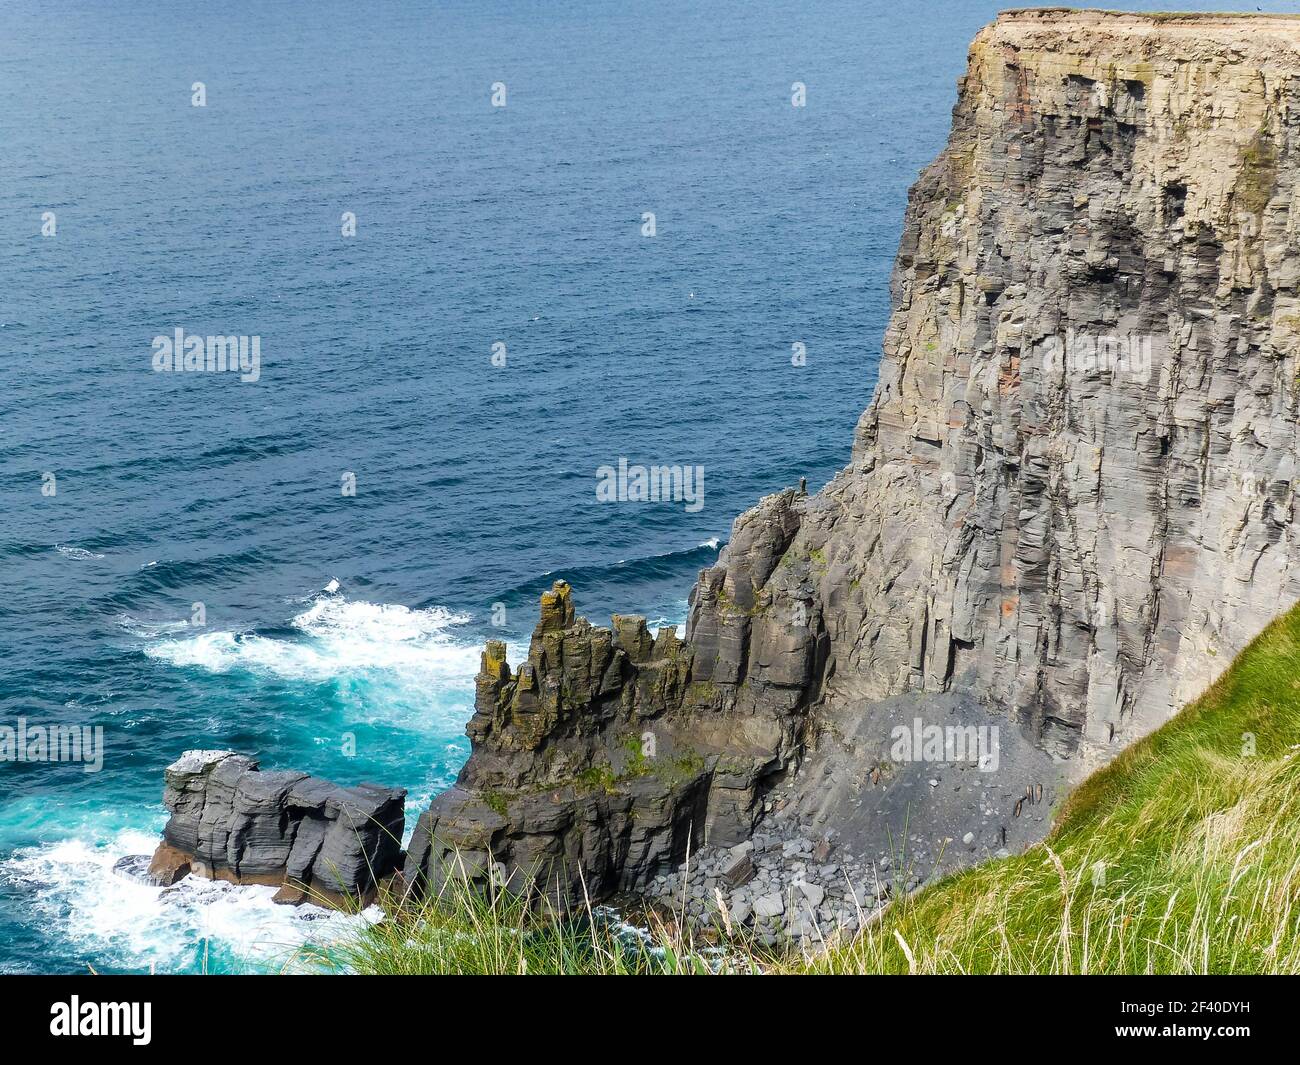 waves breaking on cliffs at irish coast Stock Photo